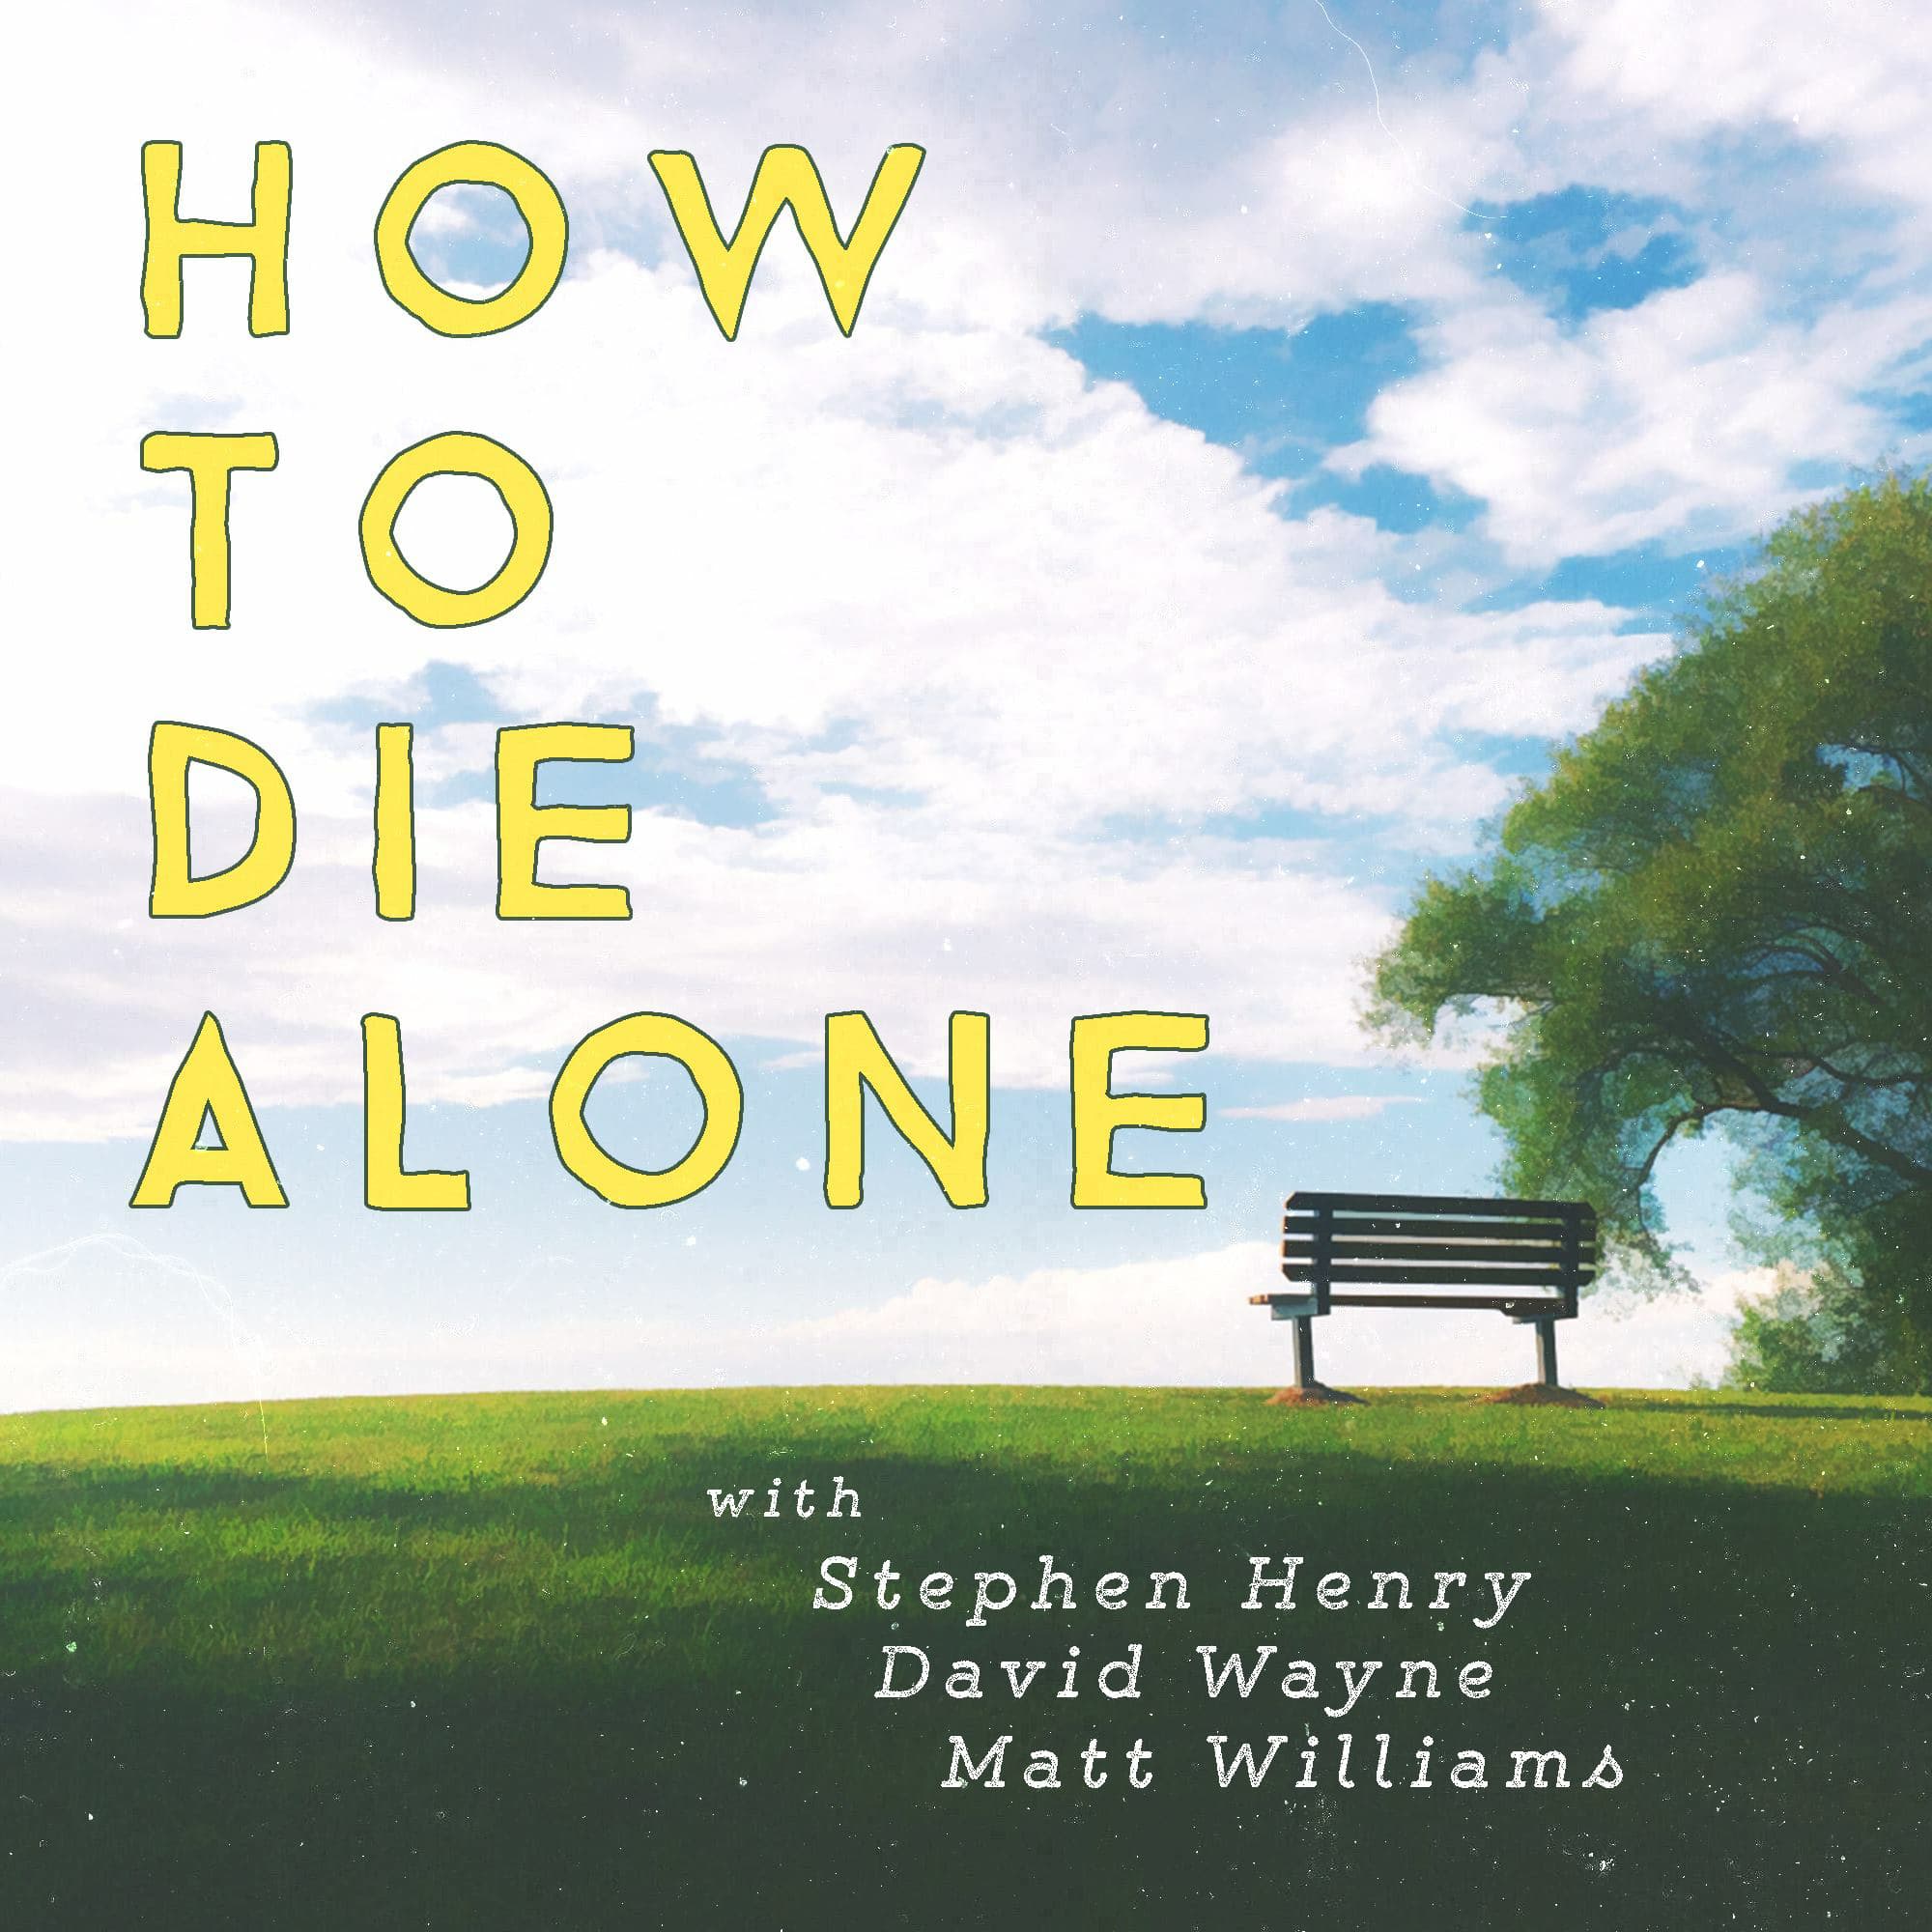  How to Die Alone - Episode 39 - Toxic Maaaaaaaan!